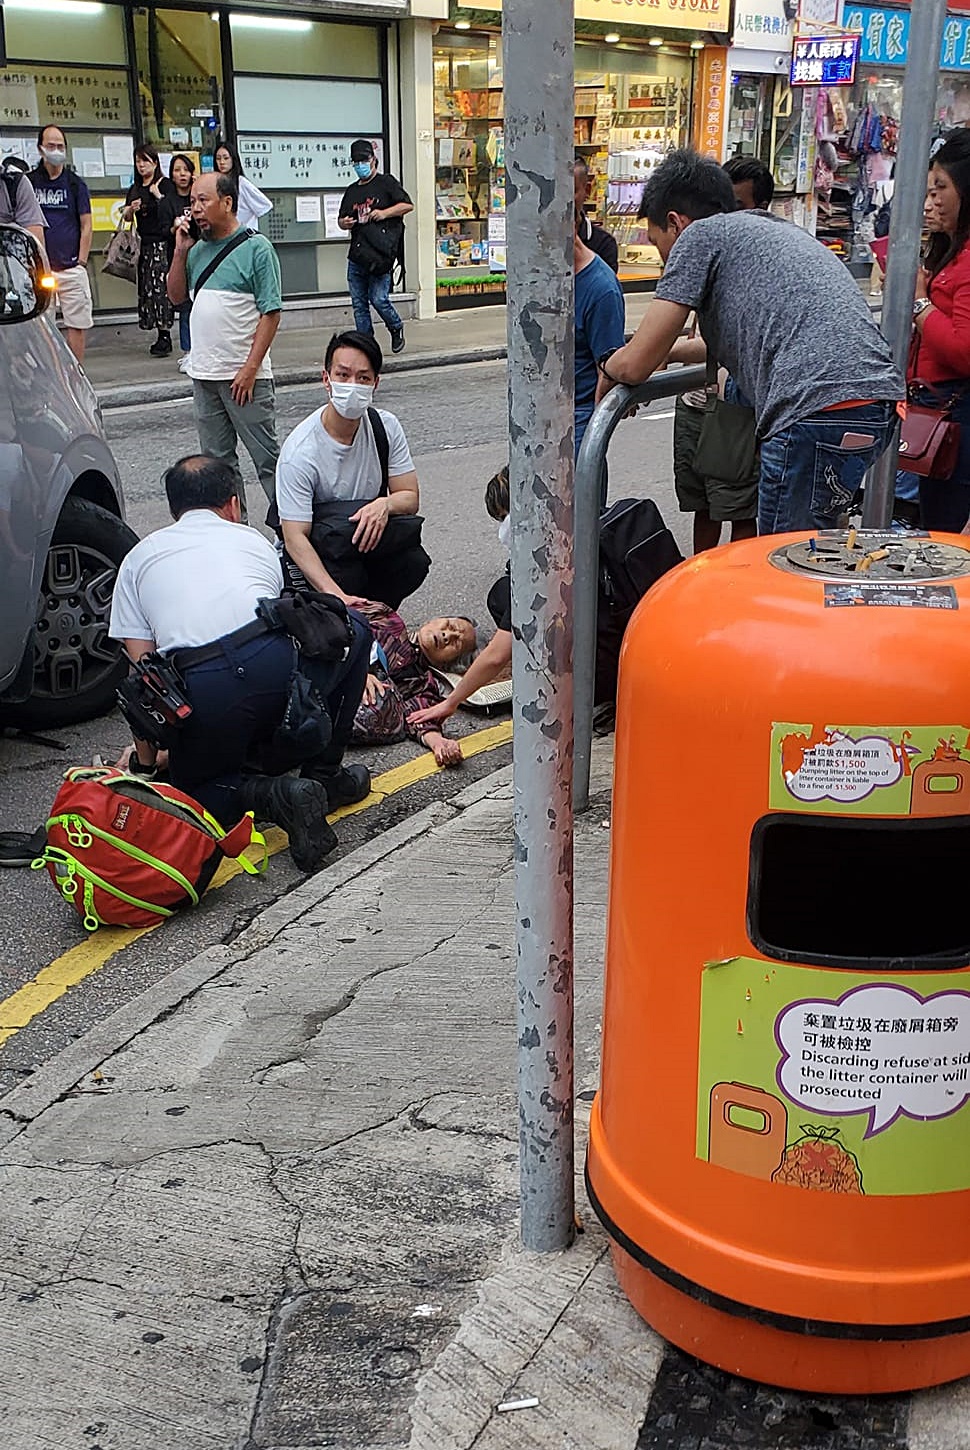 救護員在場進行急救。fb：元朗鄉約